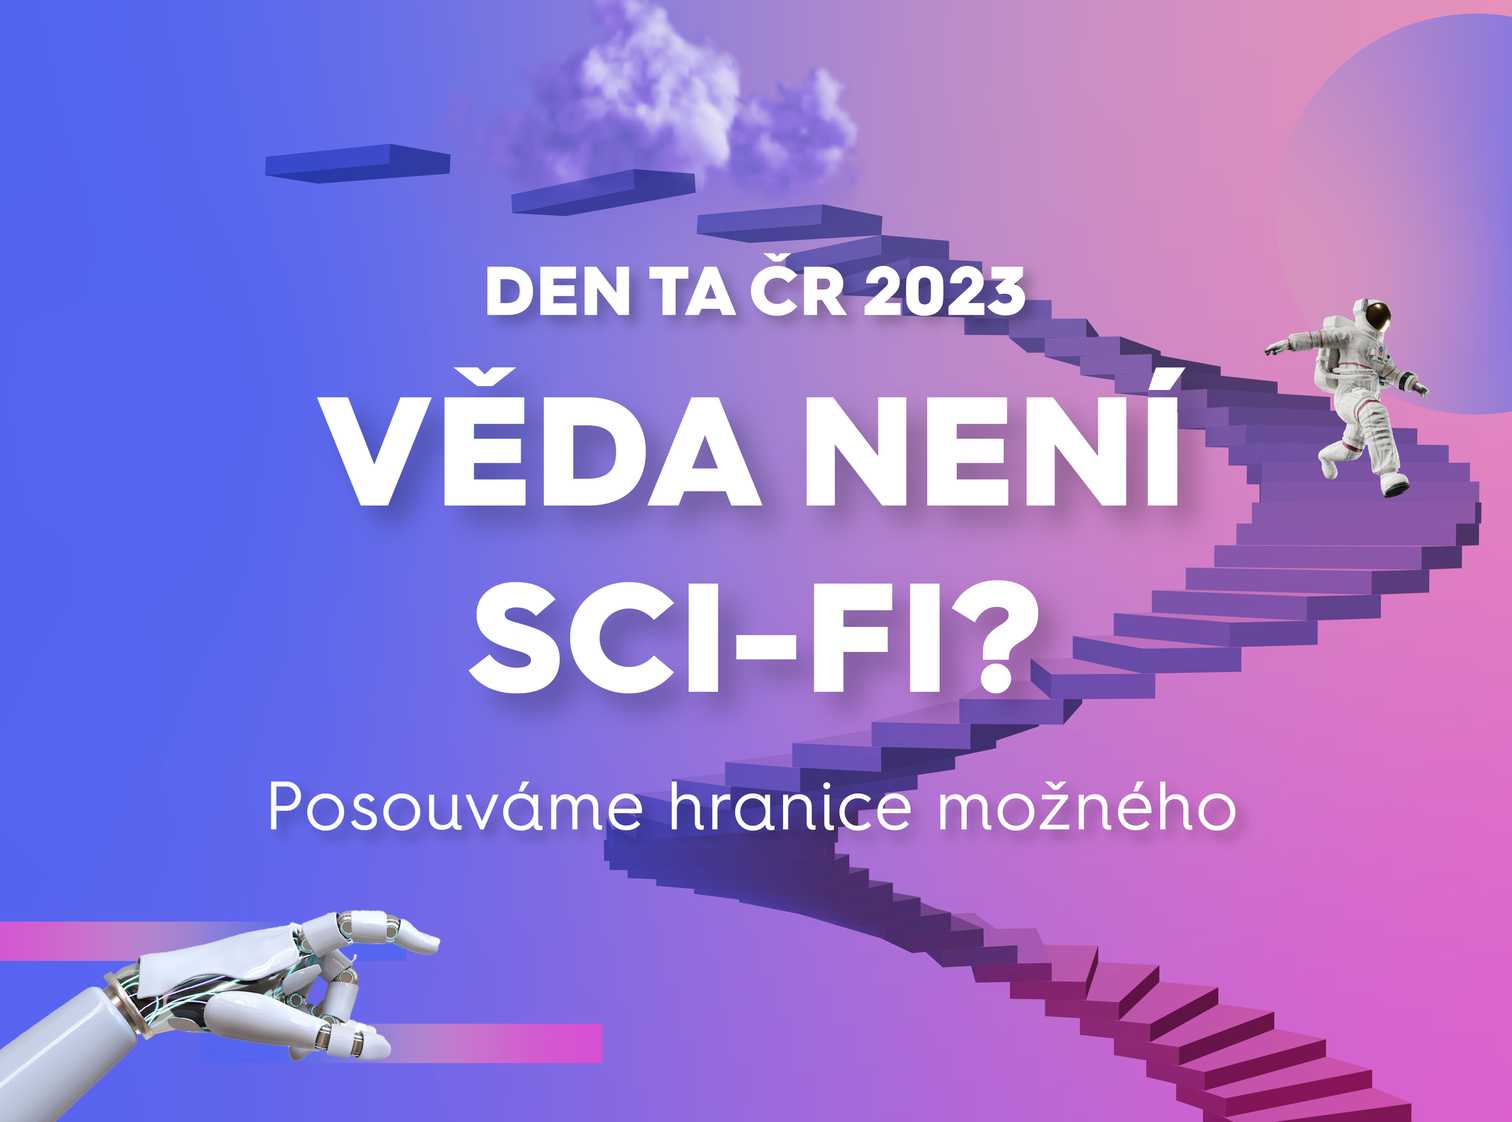 Den TA ČR 2023